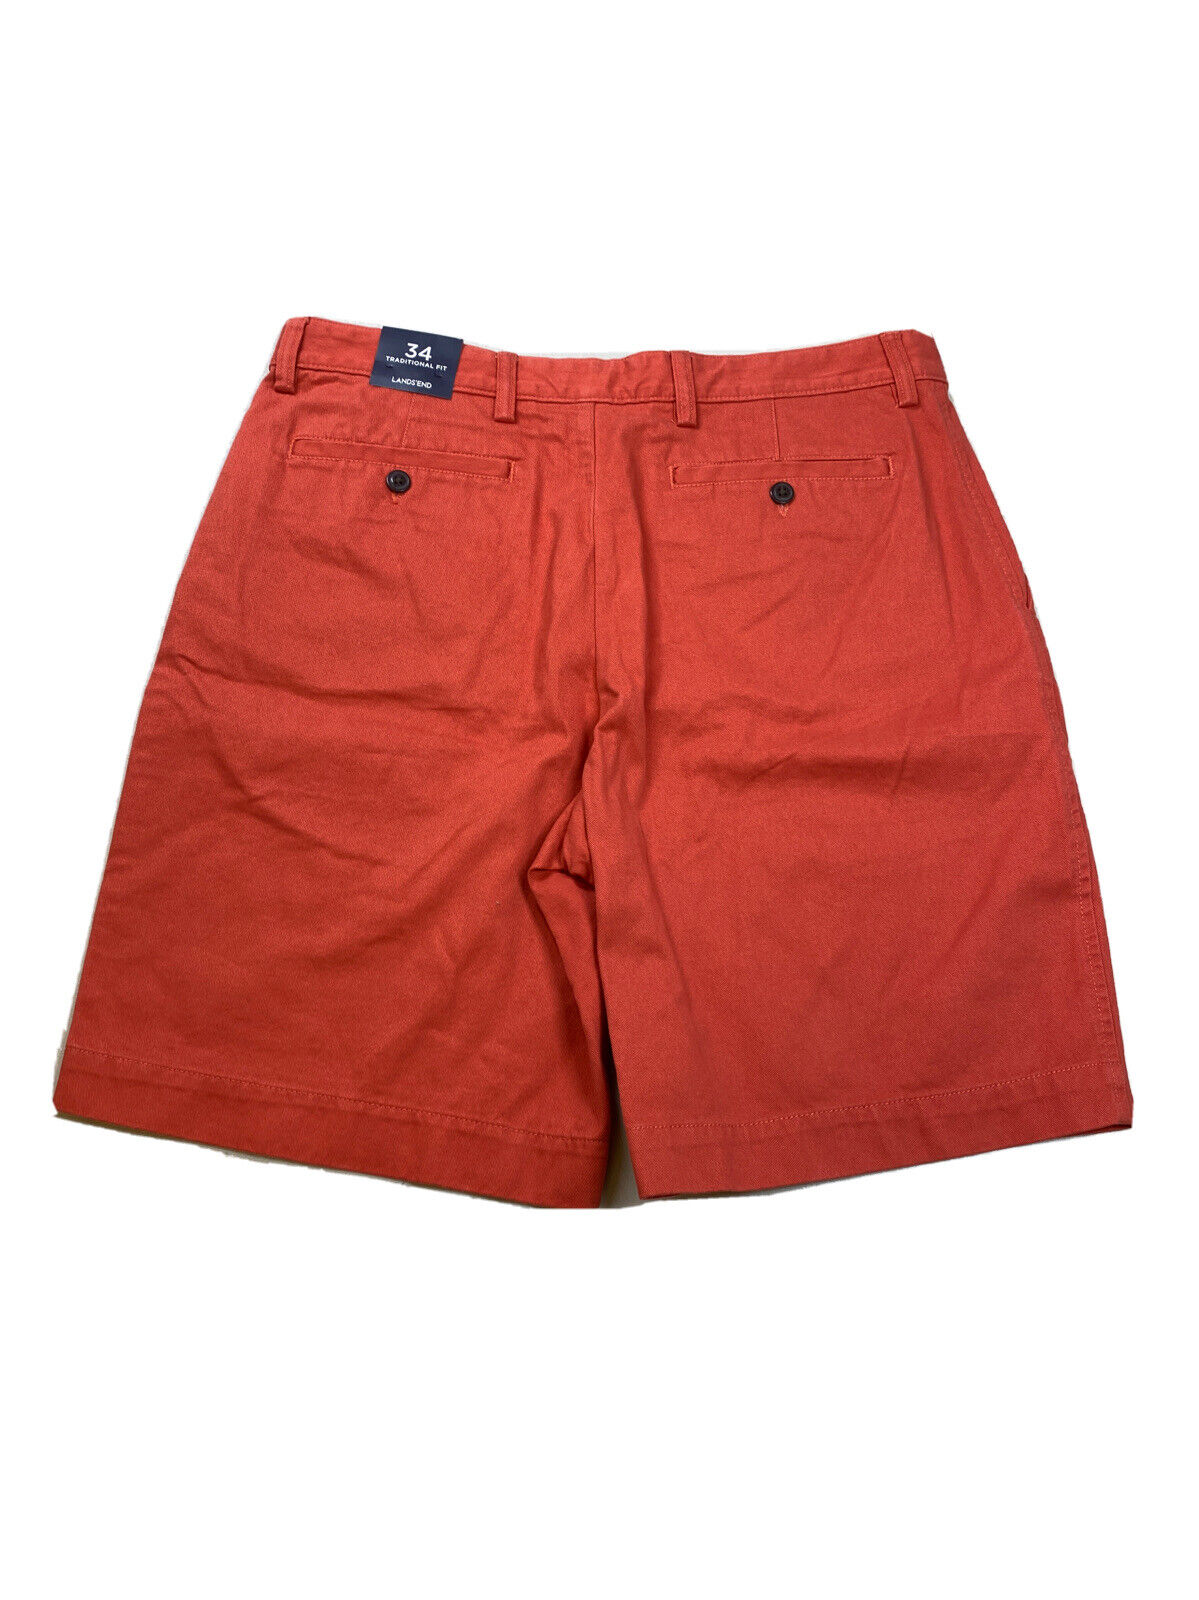 NUEVOS pantalones cortos chinos de corte tradicional en color coral rojo de Lands' End para hombre - 34